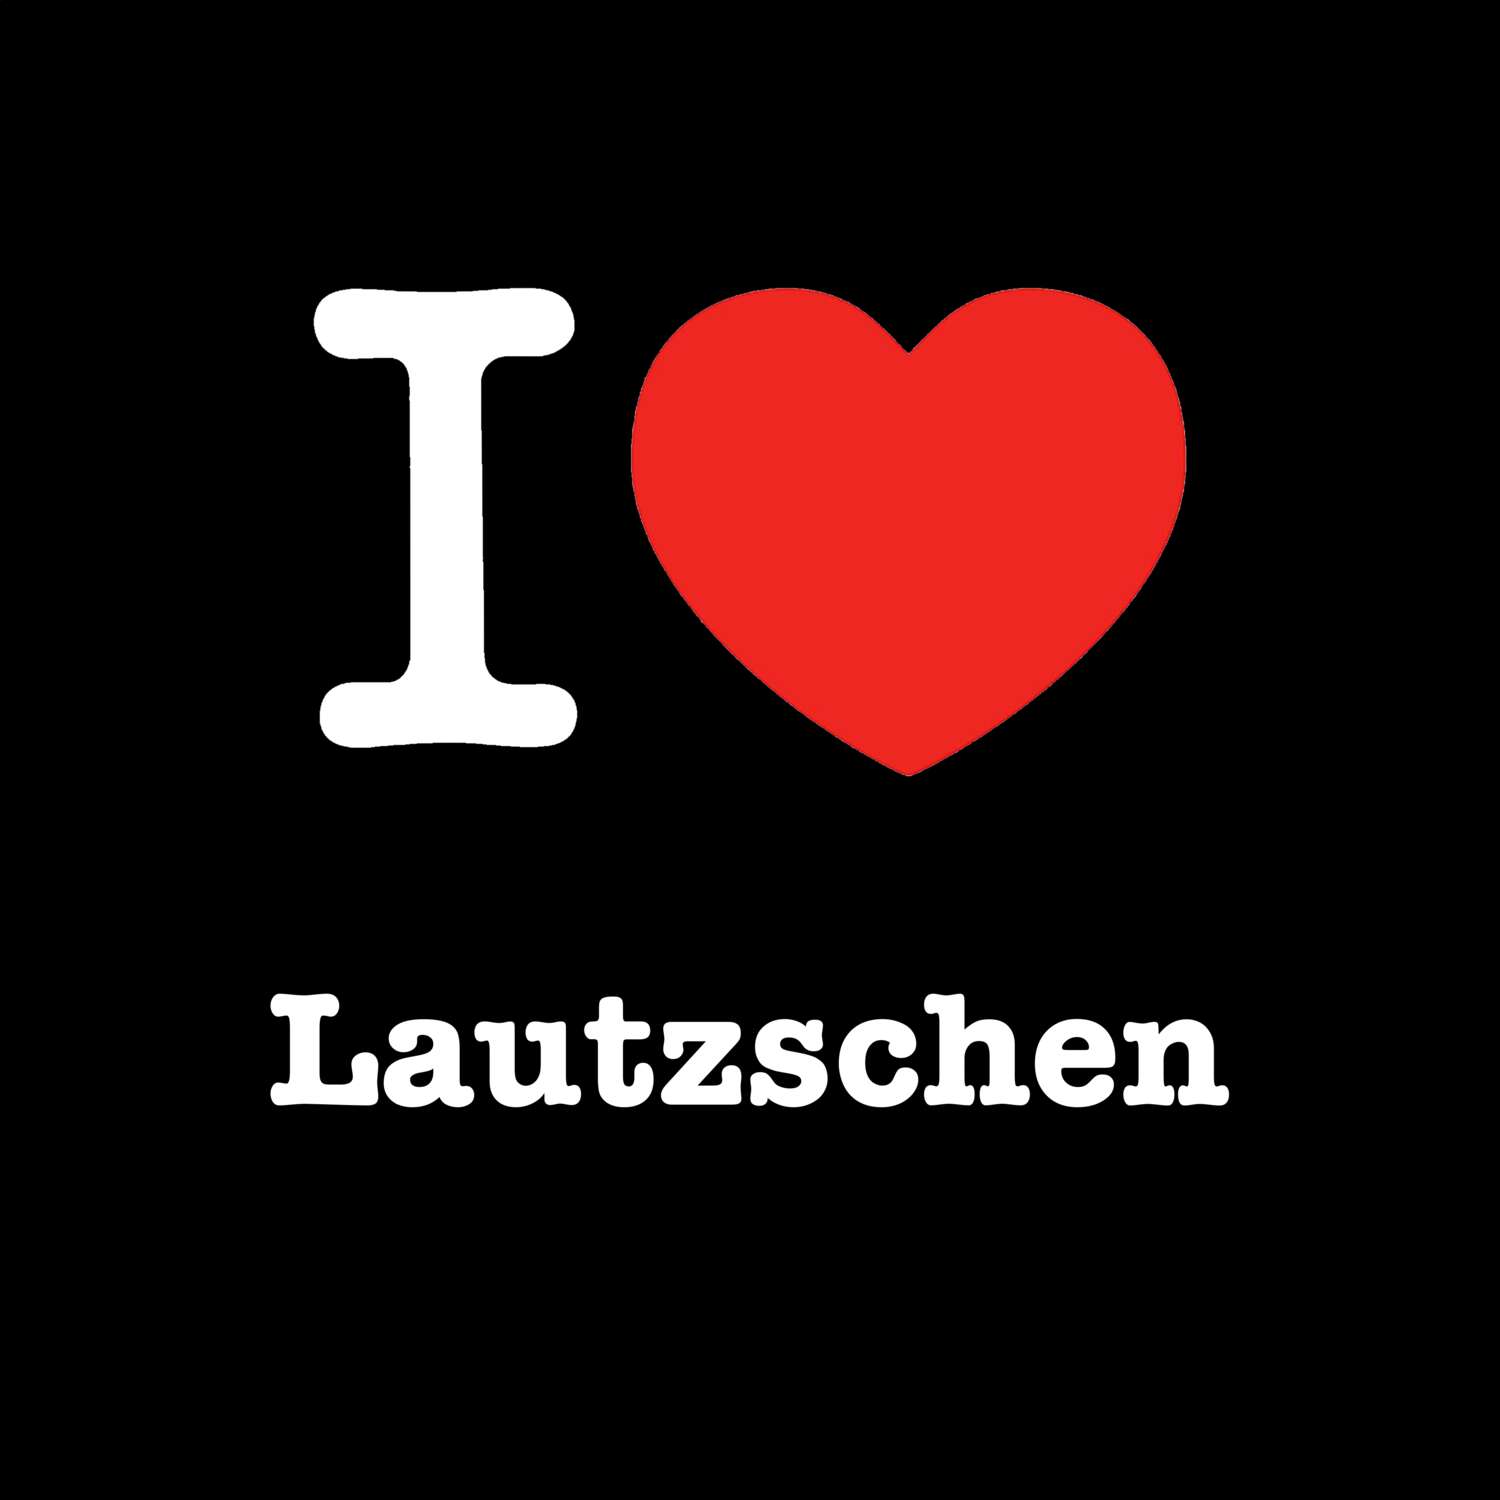 Lautzschen T-Shirt »I love«